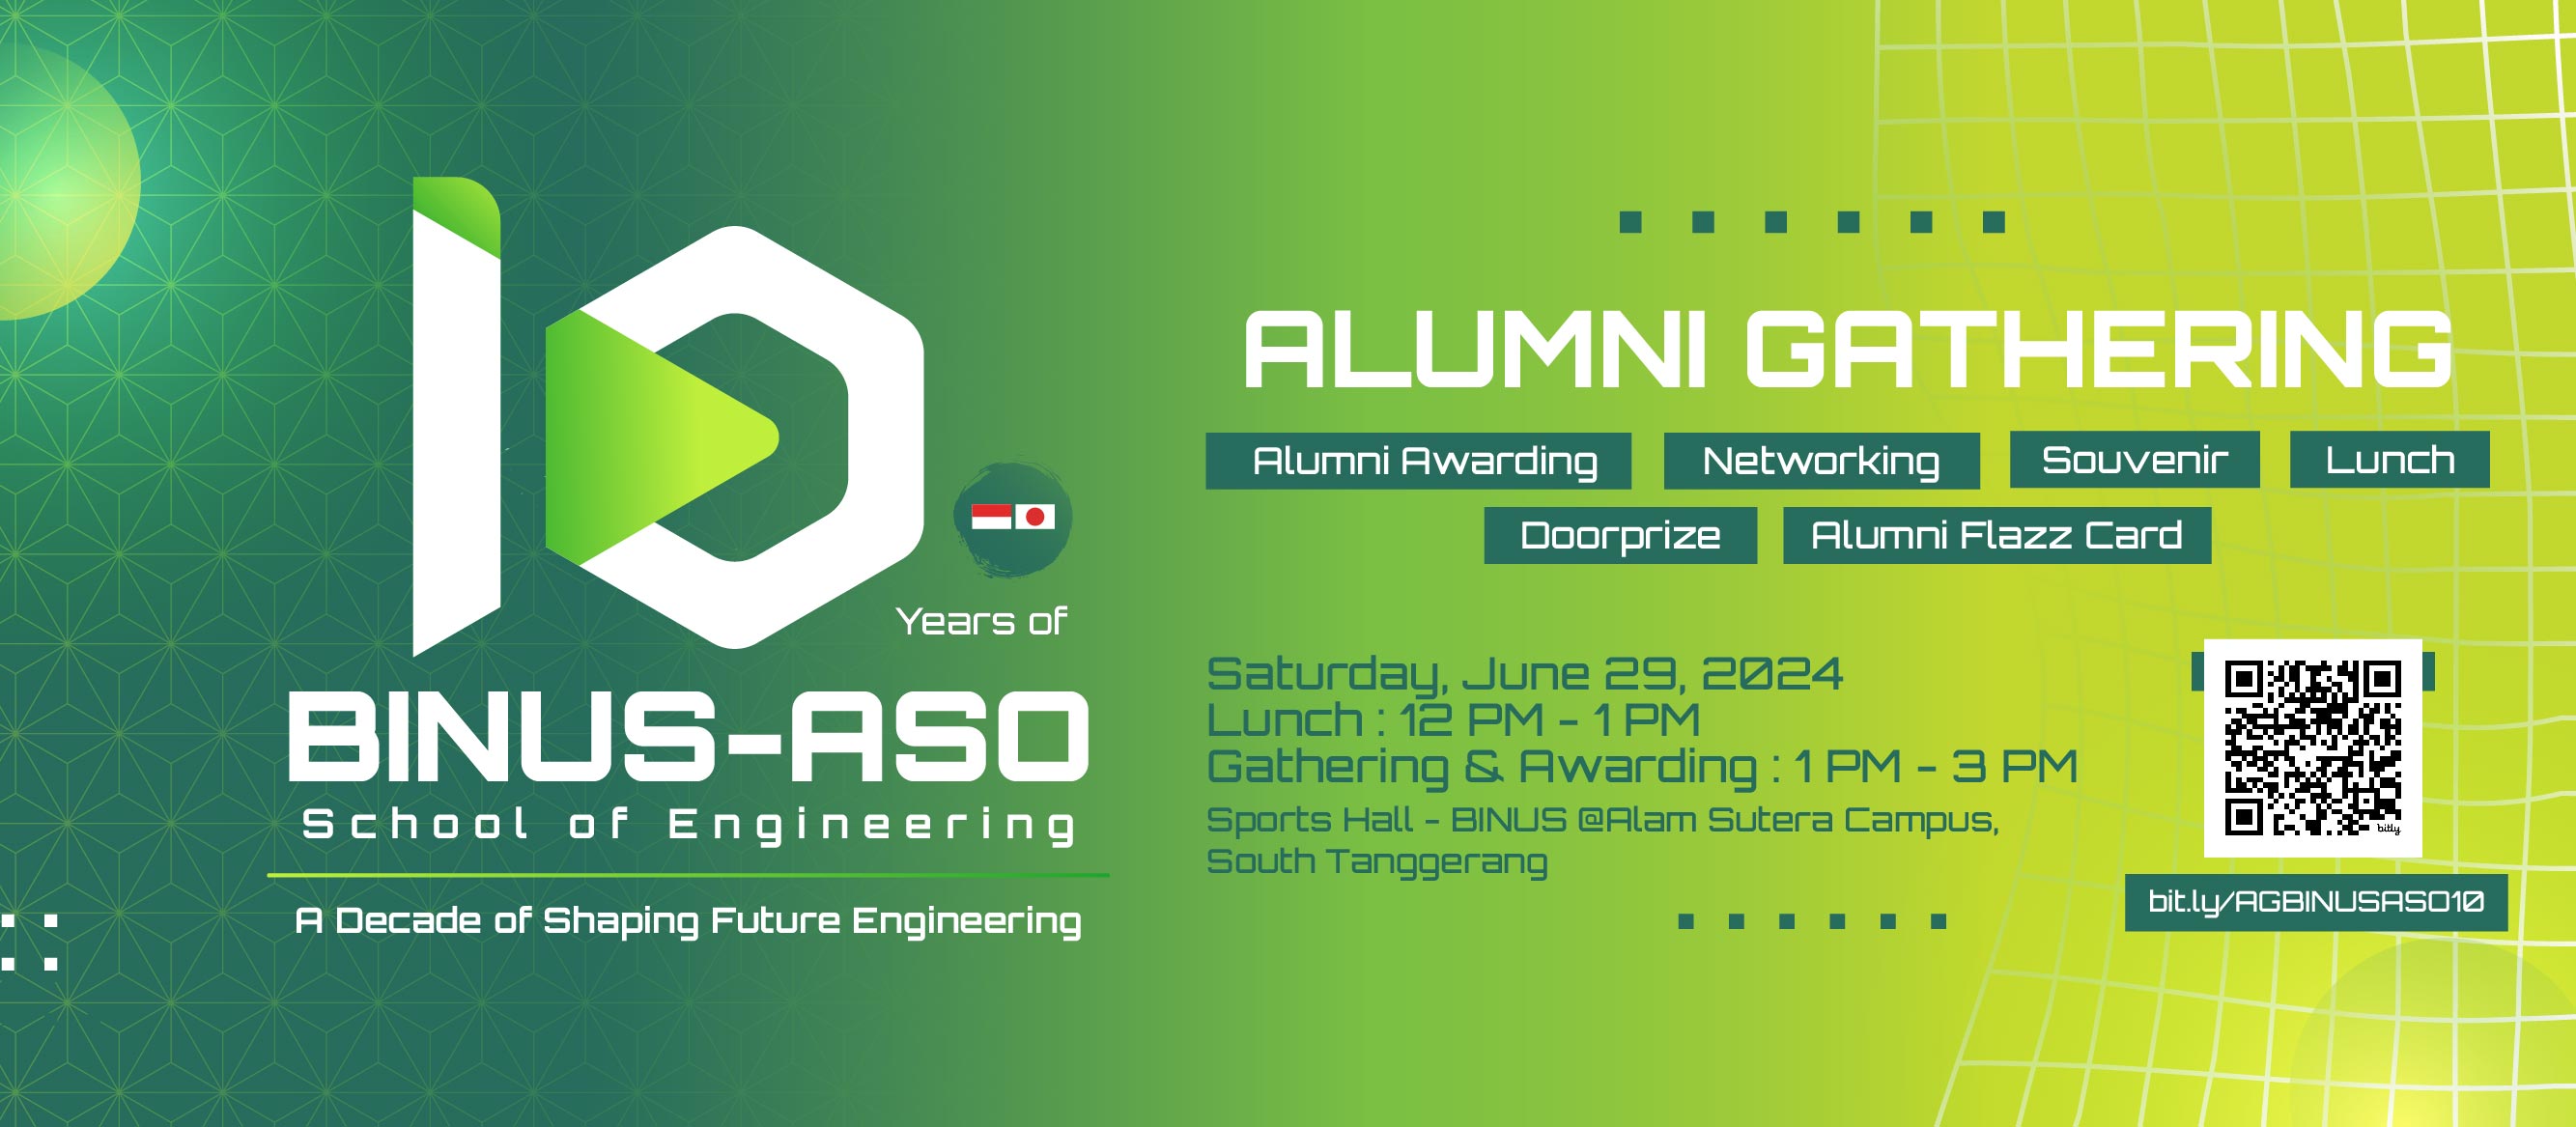 Celebrating 10 Years of BINUS-ASO School of Engineering!